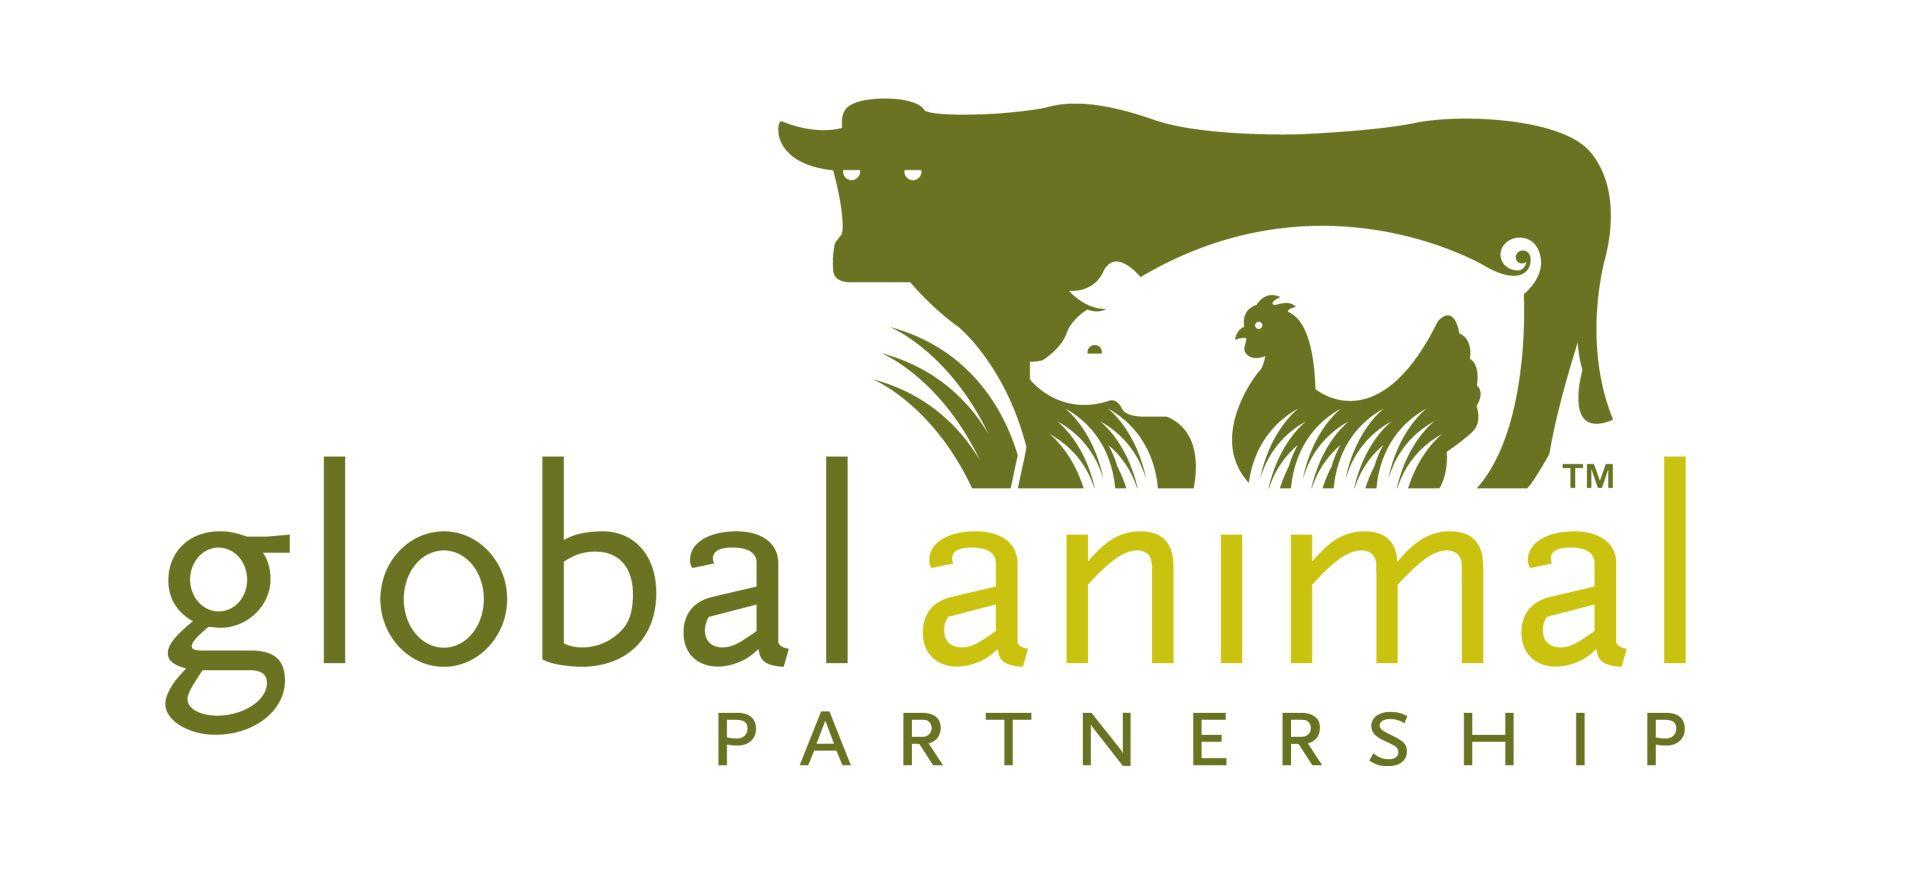 Animal Feed Logo - Cattle Feed Logo | www.picsbud.com